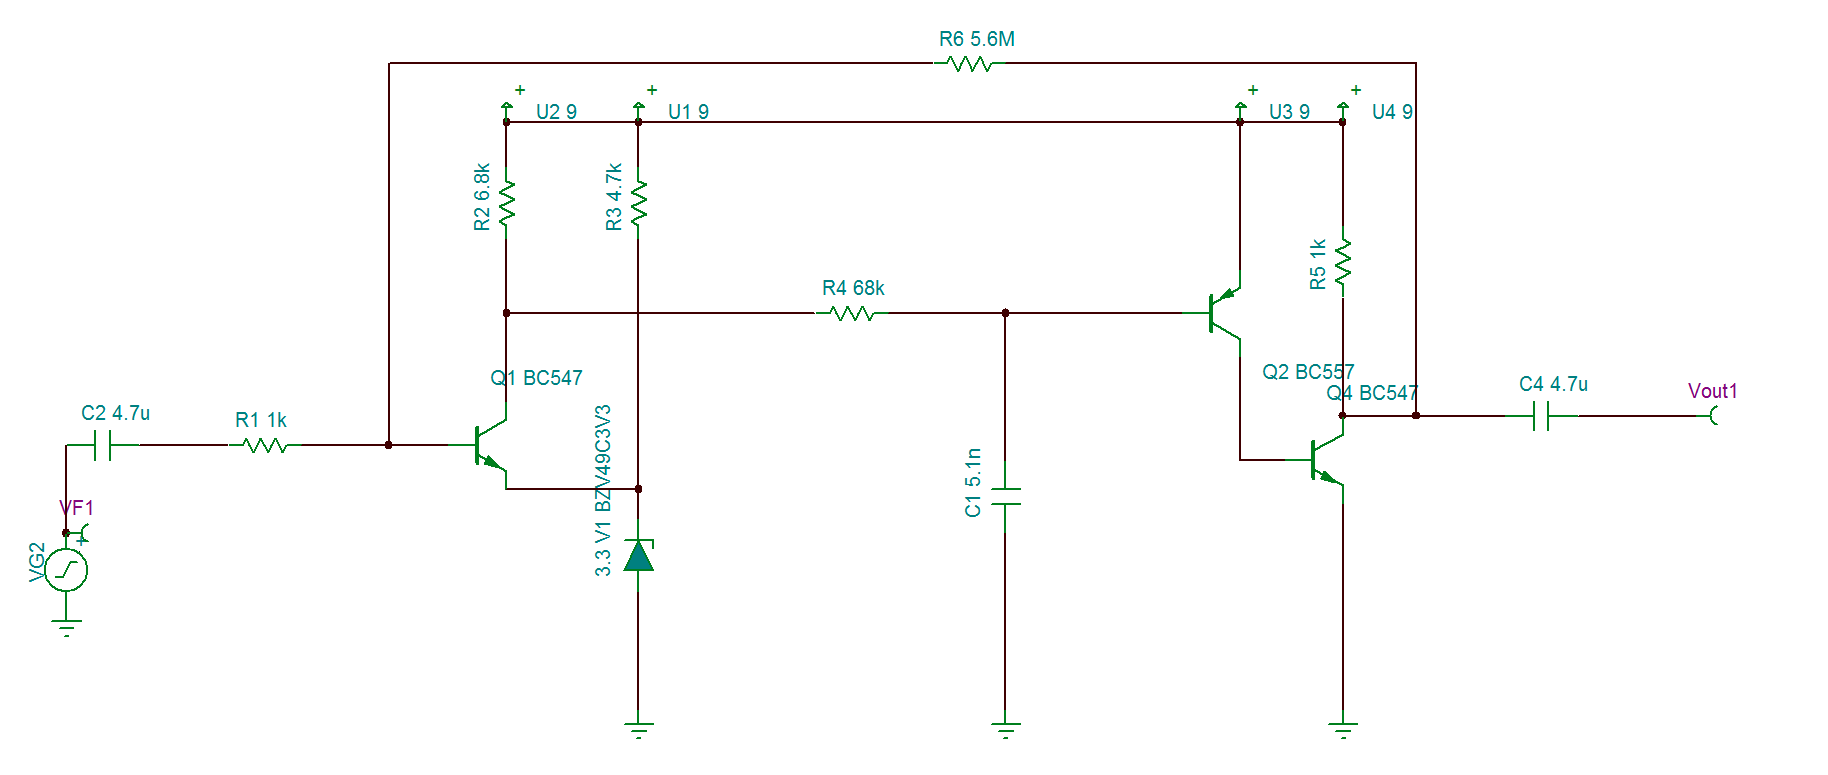 TINA/Spice: Help with irregular circuit!! - Simulation, hardware ...